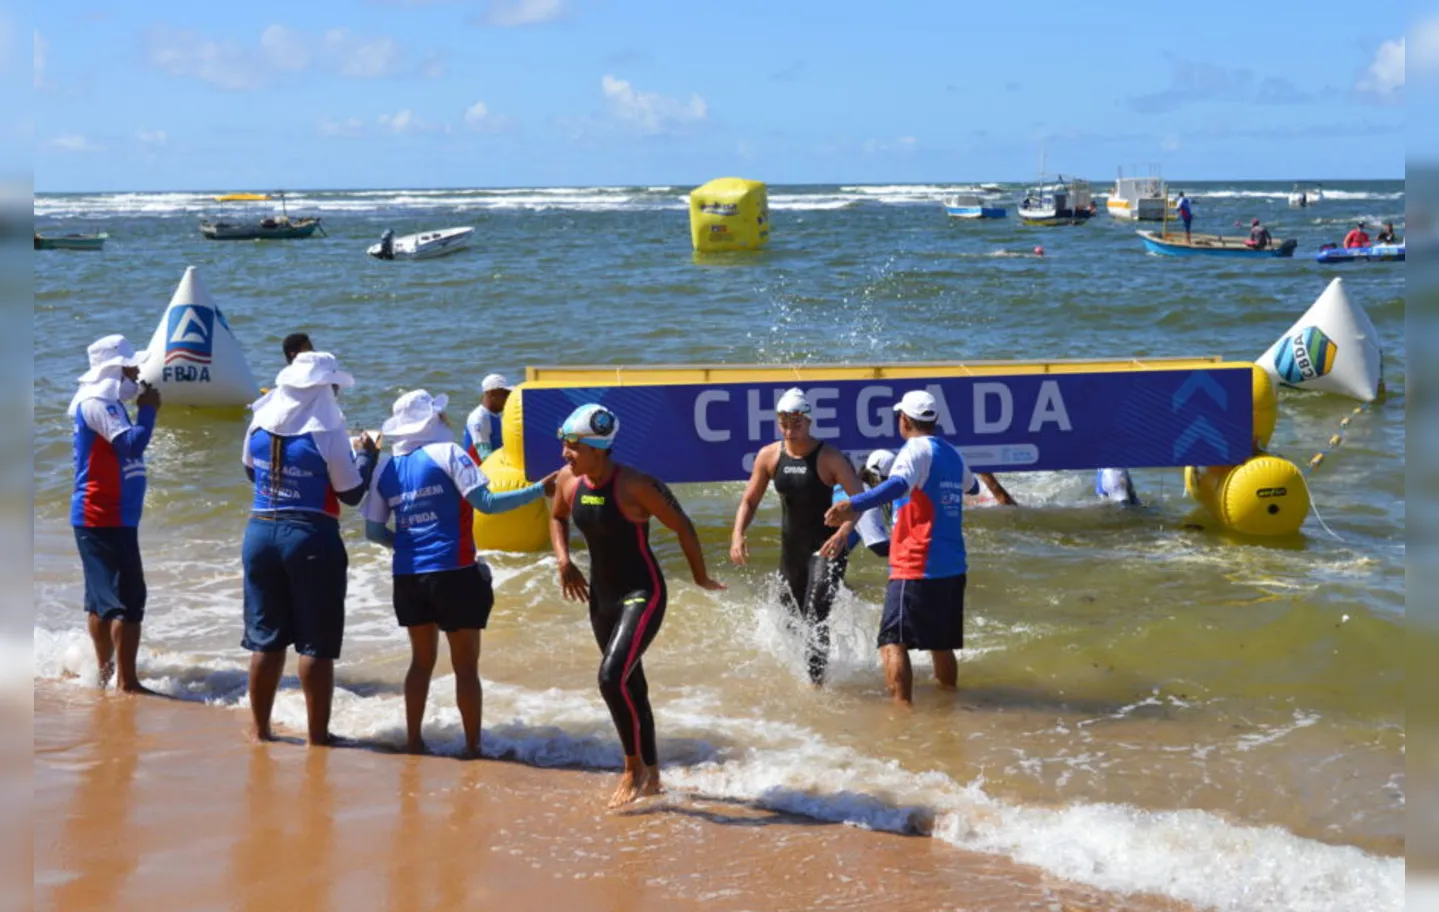 A competição acontece em Palmas no Tocantins